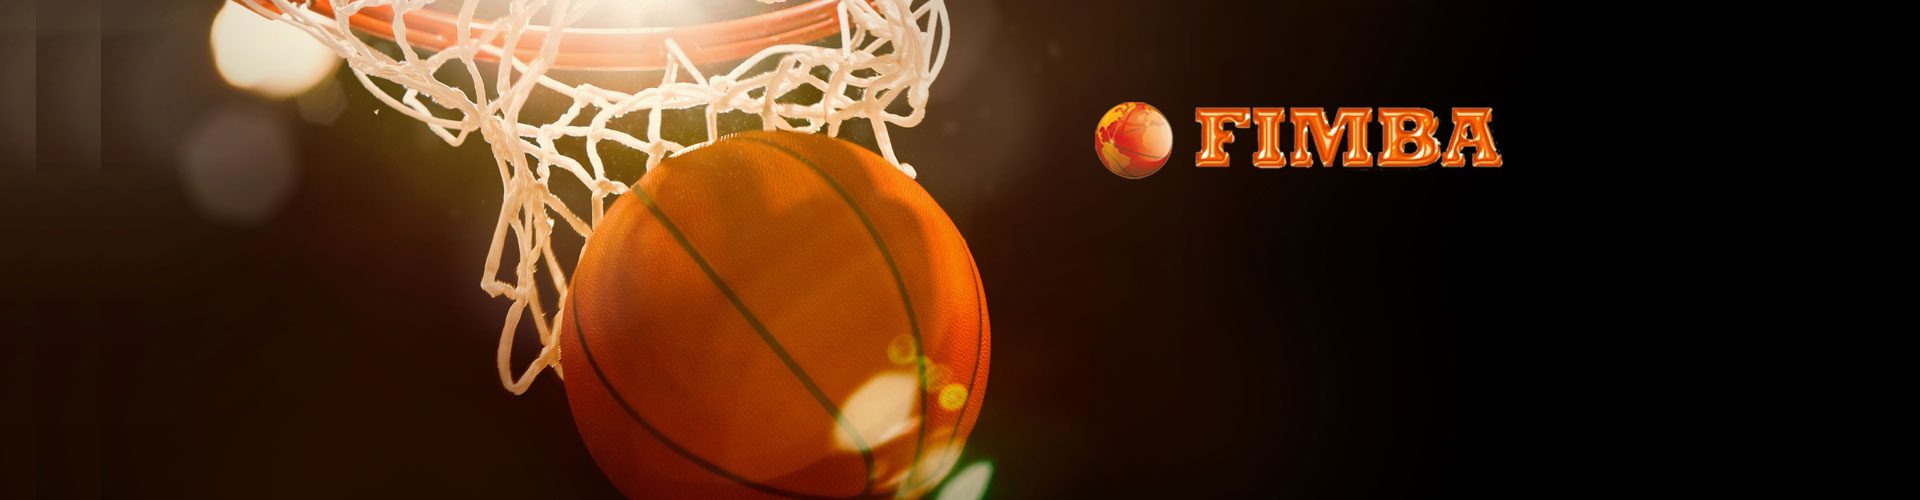 3° giorno Mondiali di Basket Montecatini Terme – tutte le foto